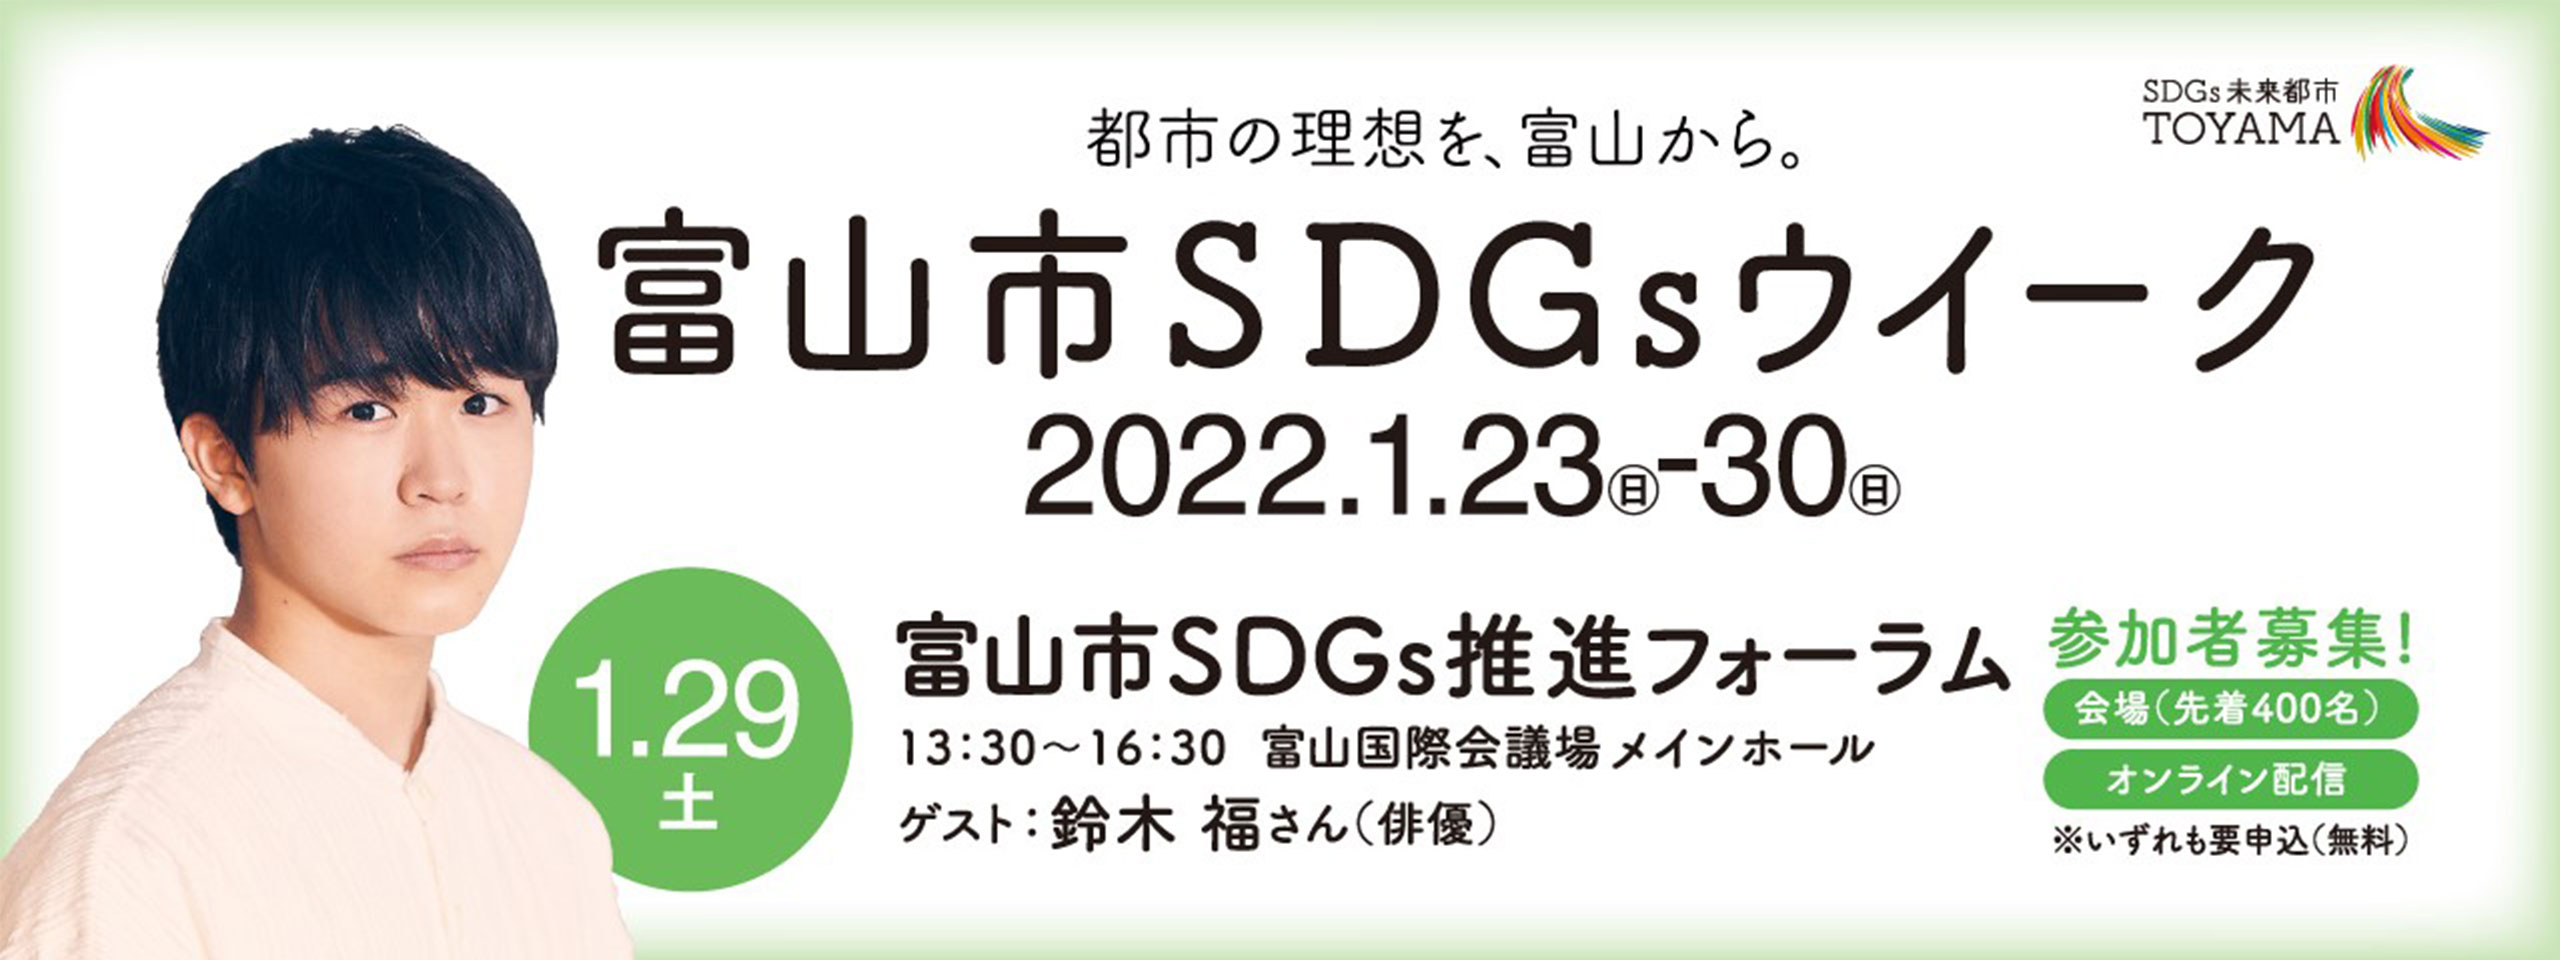 富山市SDGs推進フォーラム参加者募集